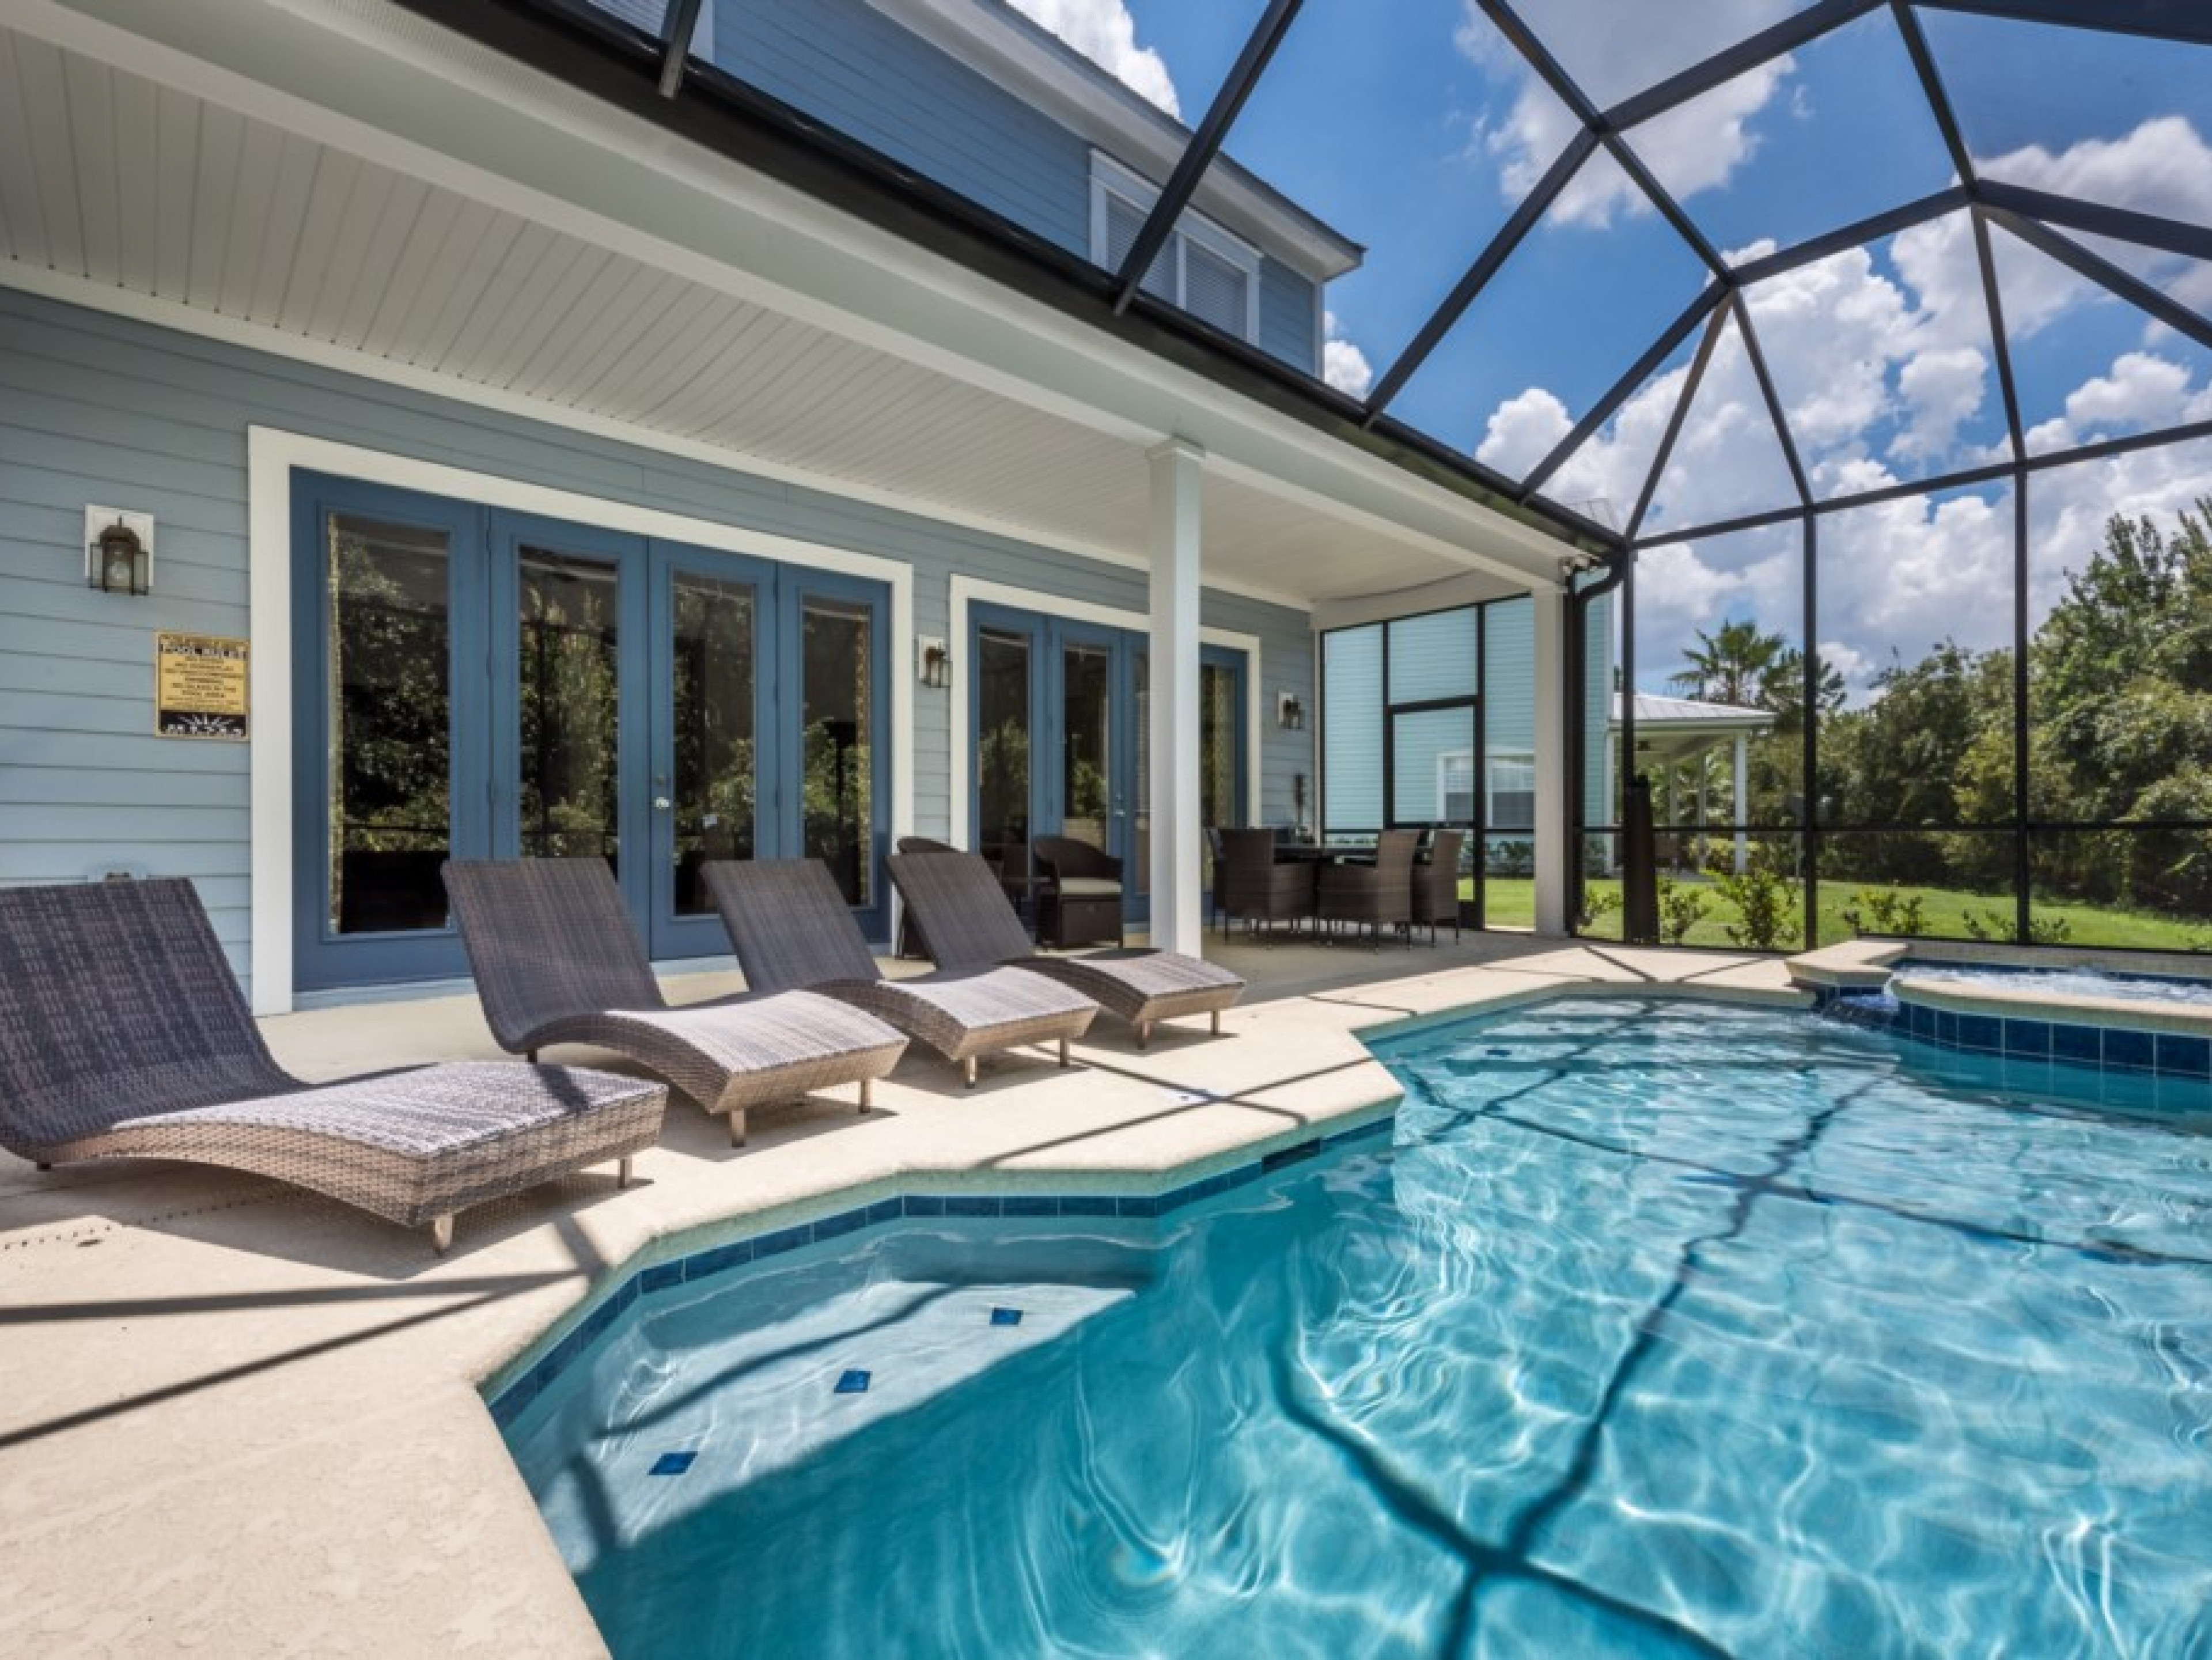 4 bedroom vacation rentals in Orlando Florida Reunion Resort 161